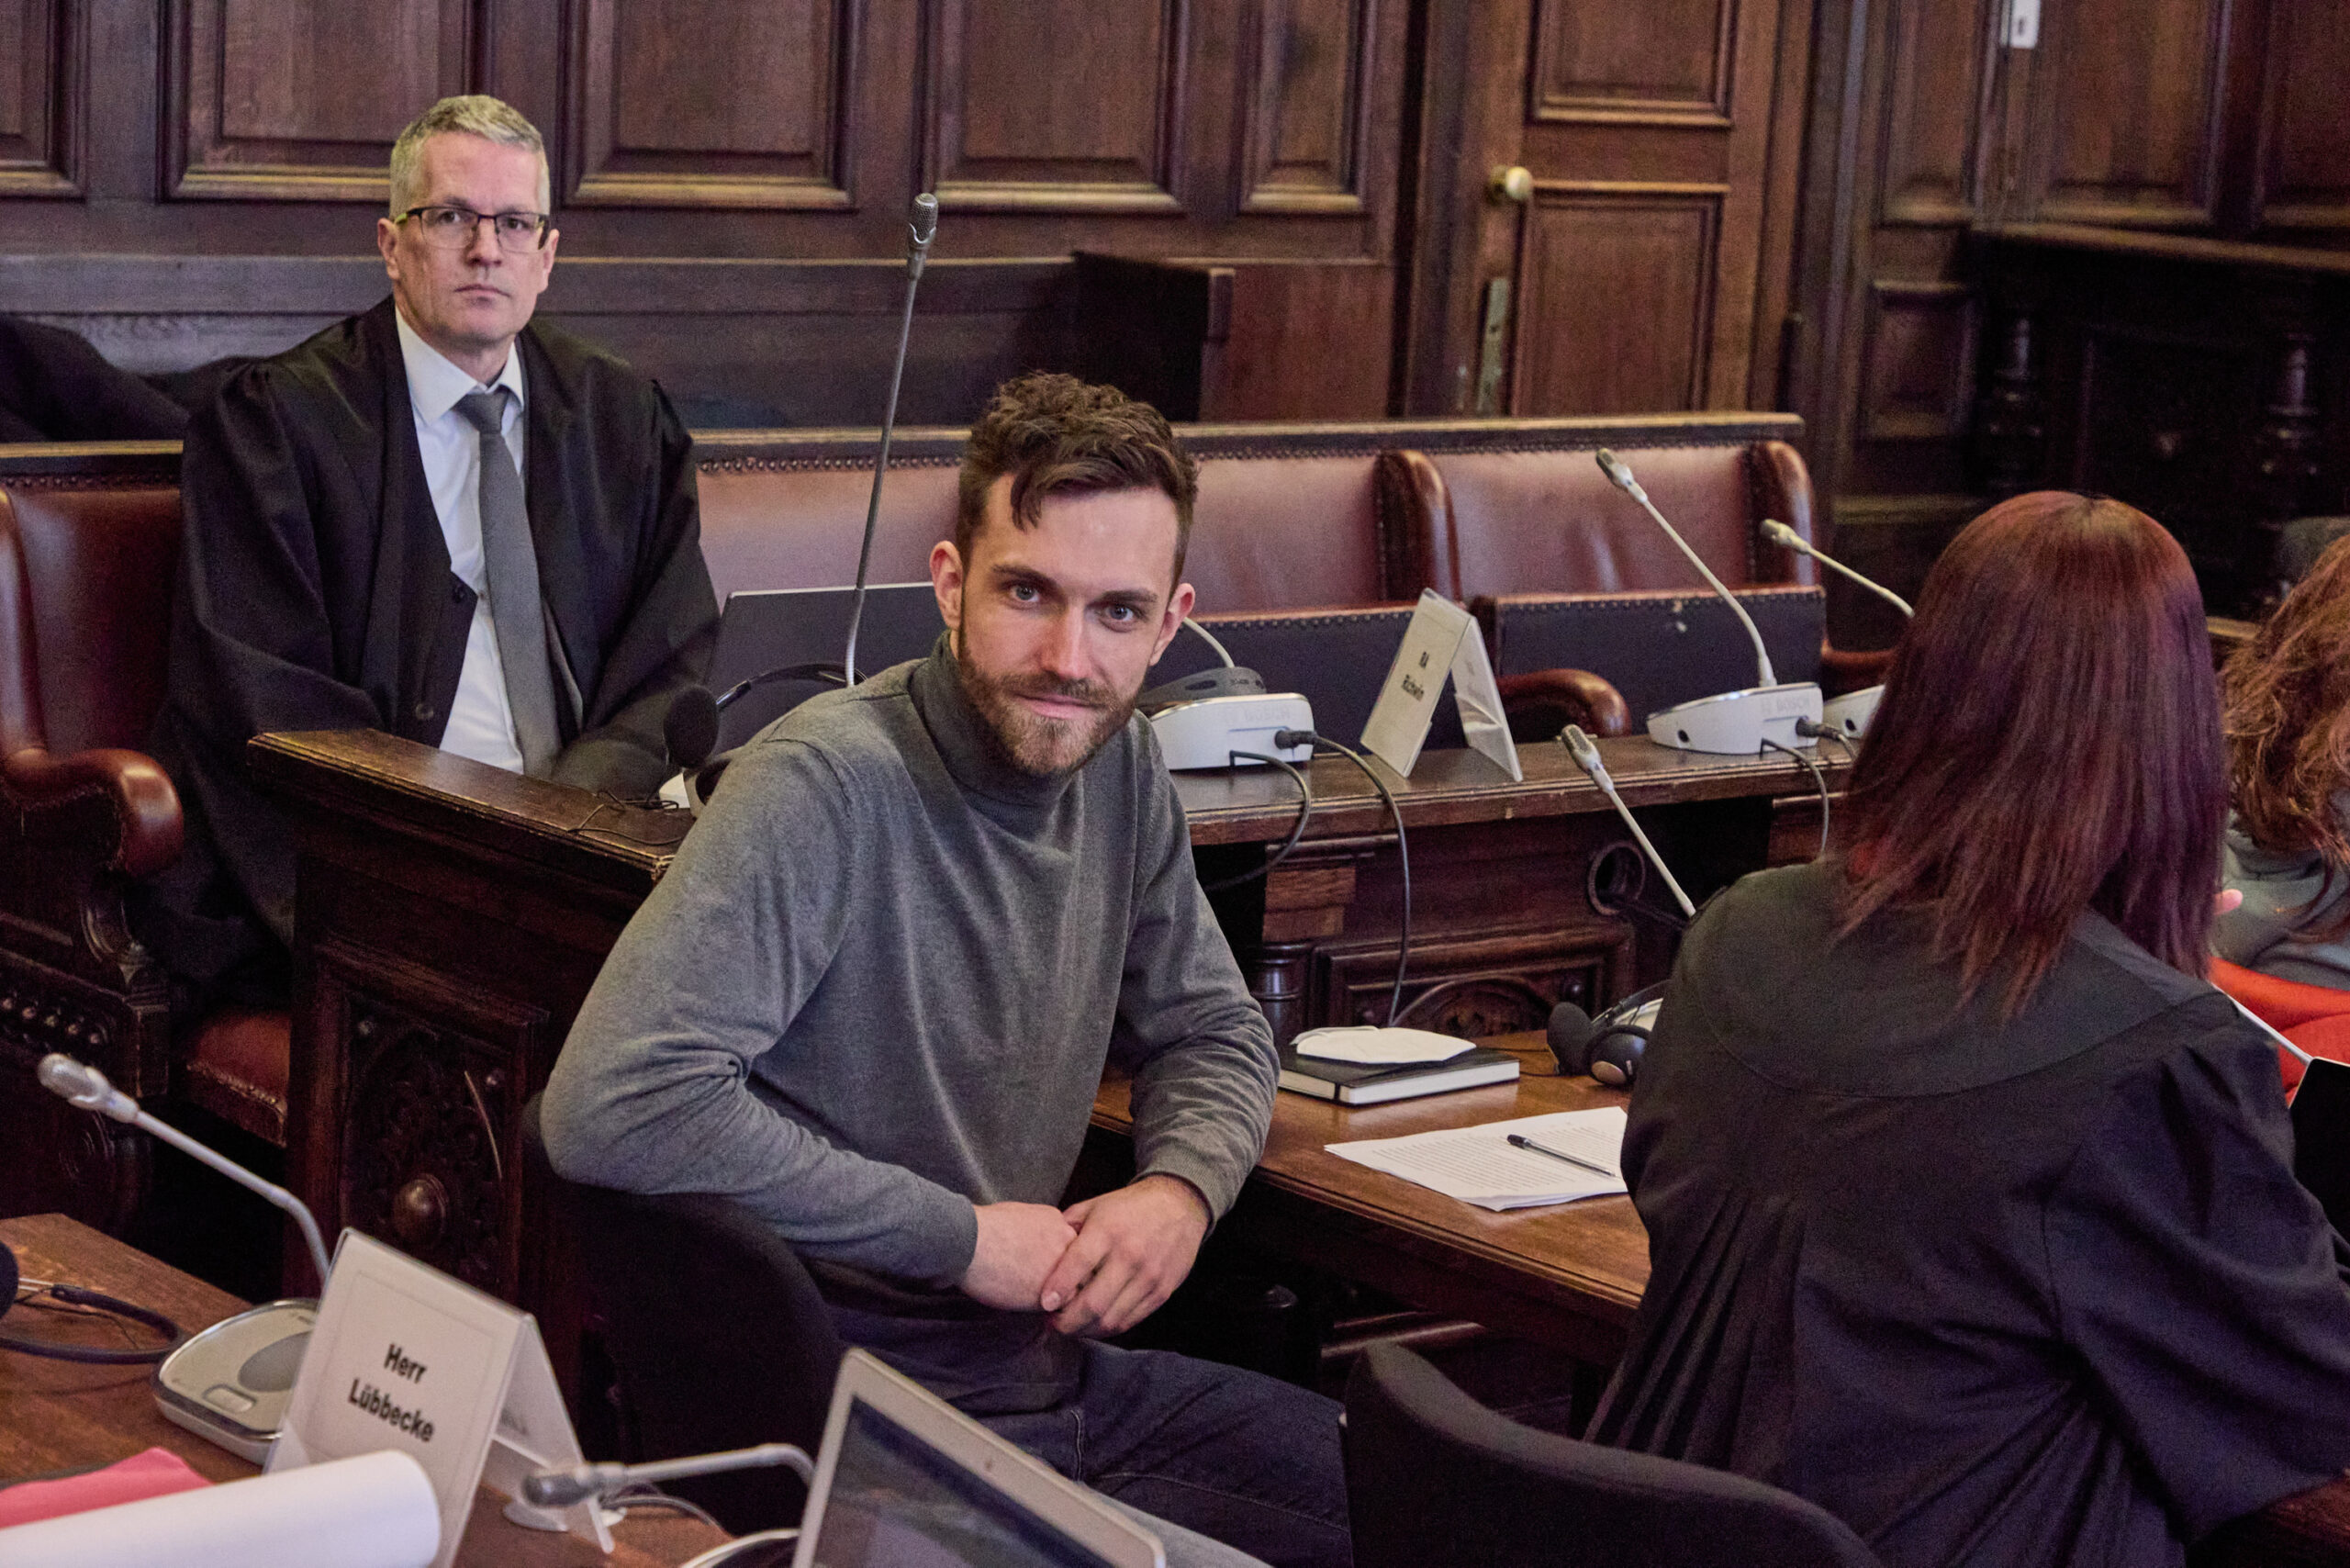 Nils Angeklagter Nils Jansen im Gerichtssaal